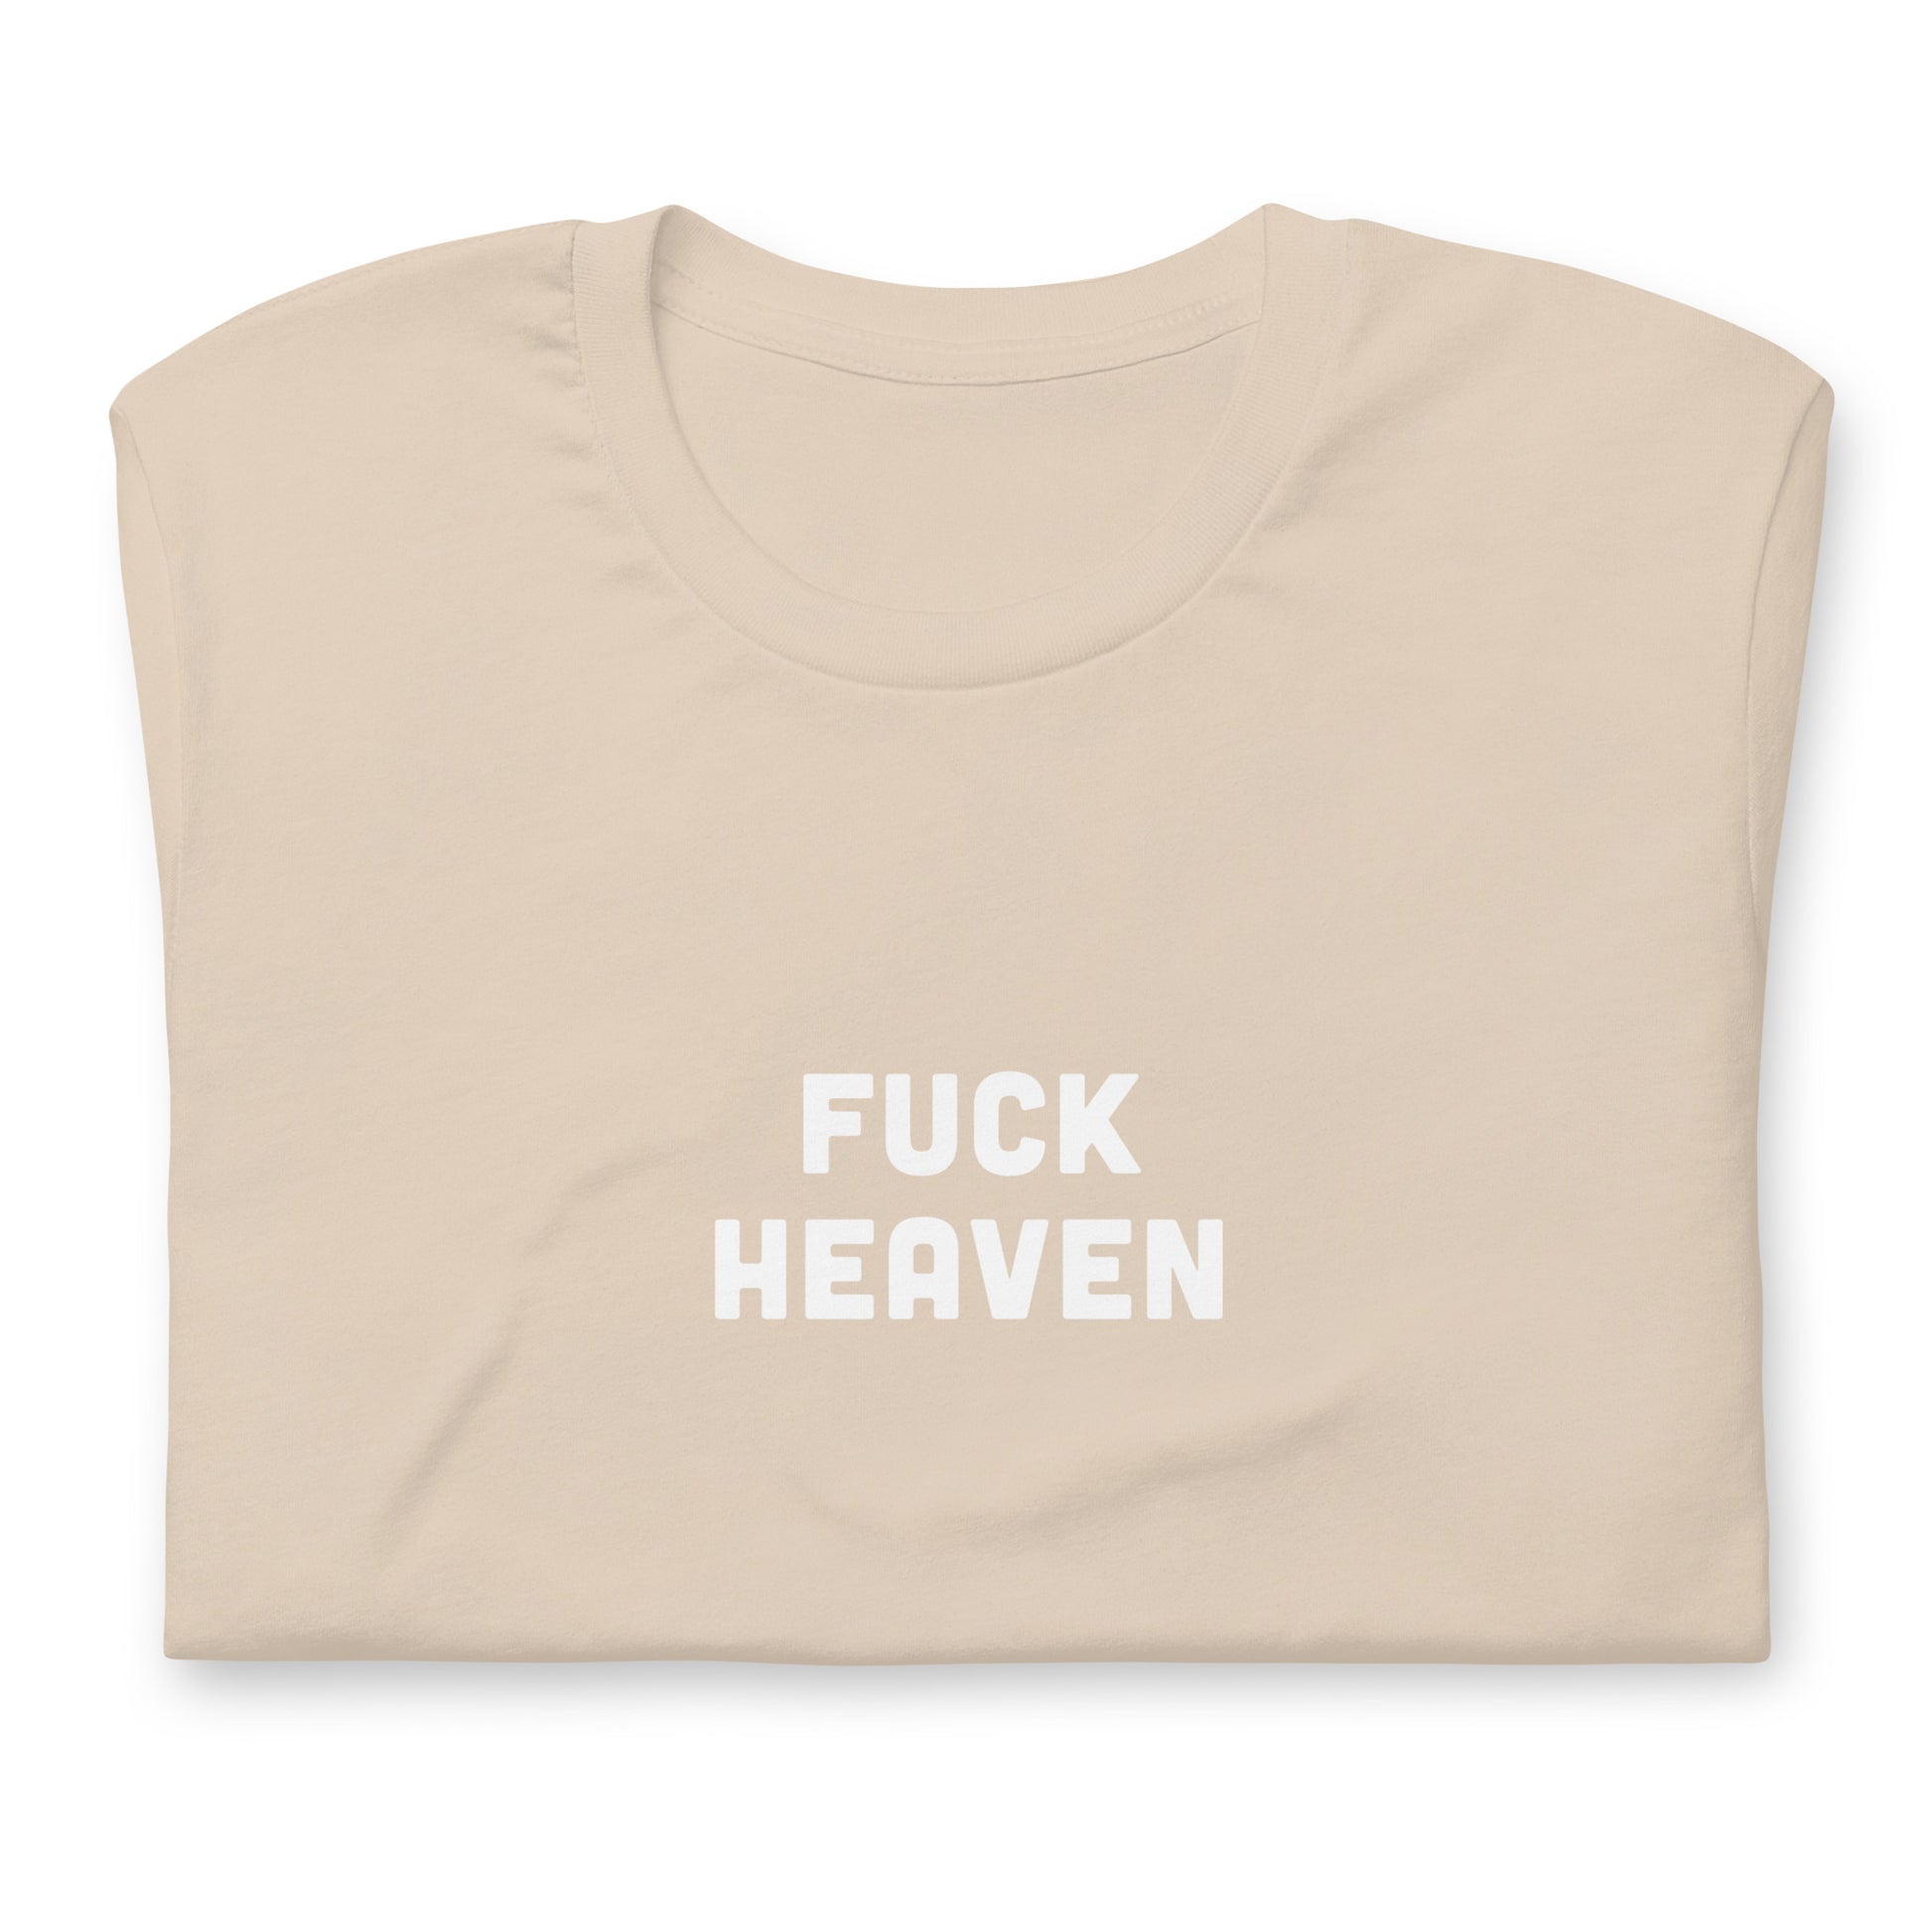 Fuck Heaven T-Shirt Size L Color Asphalt